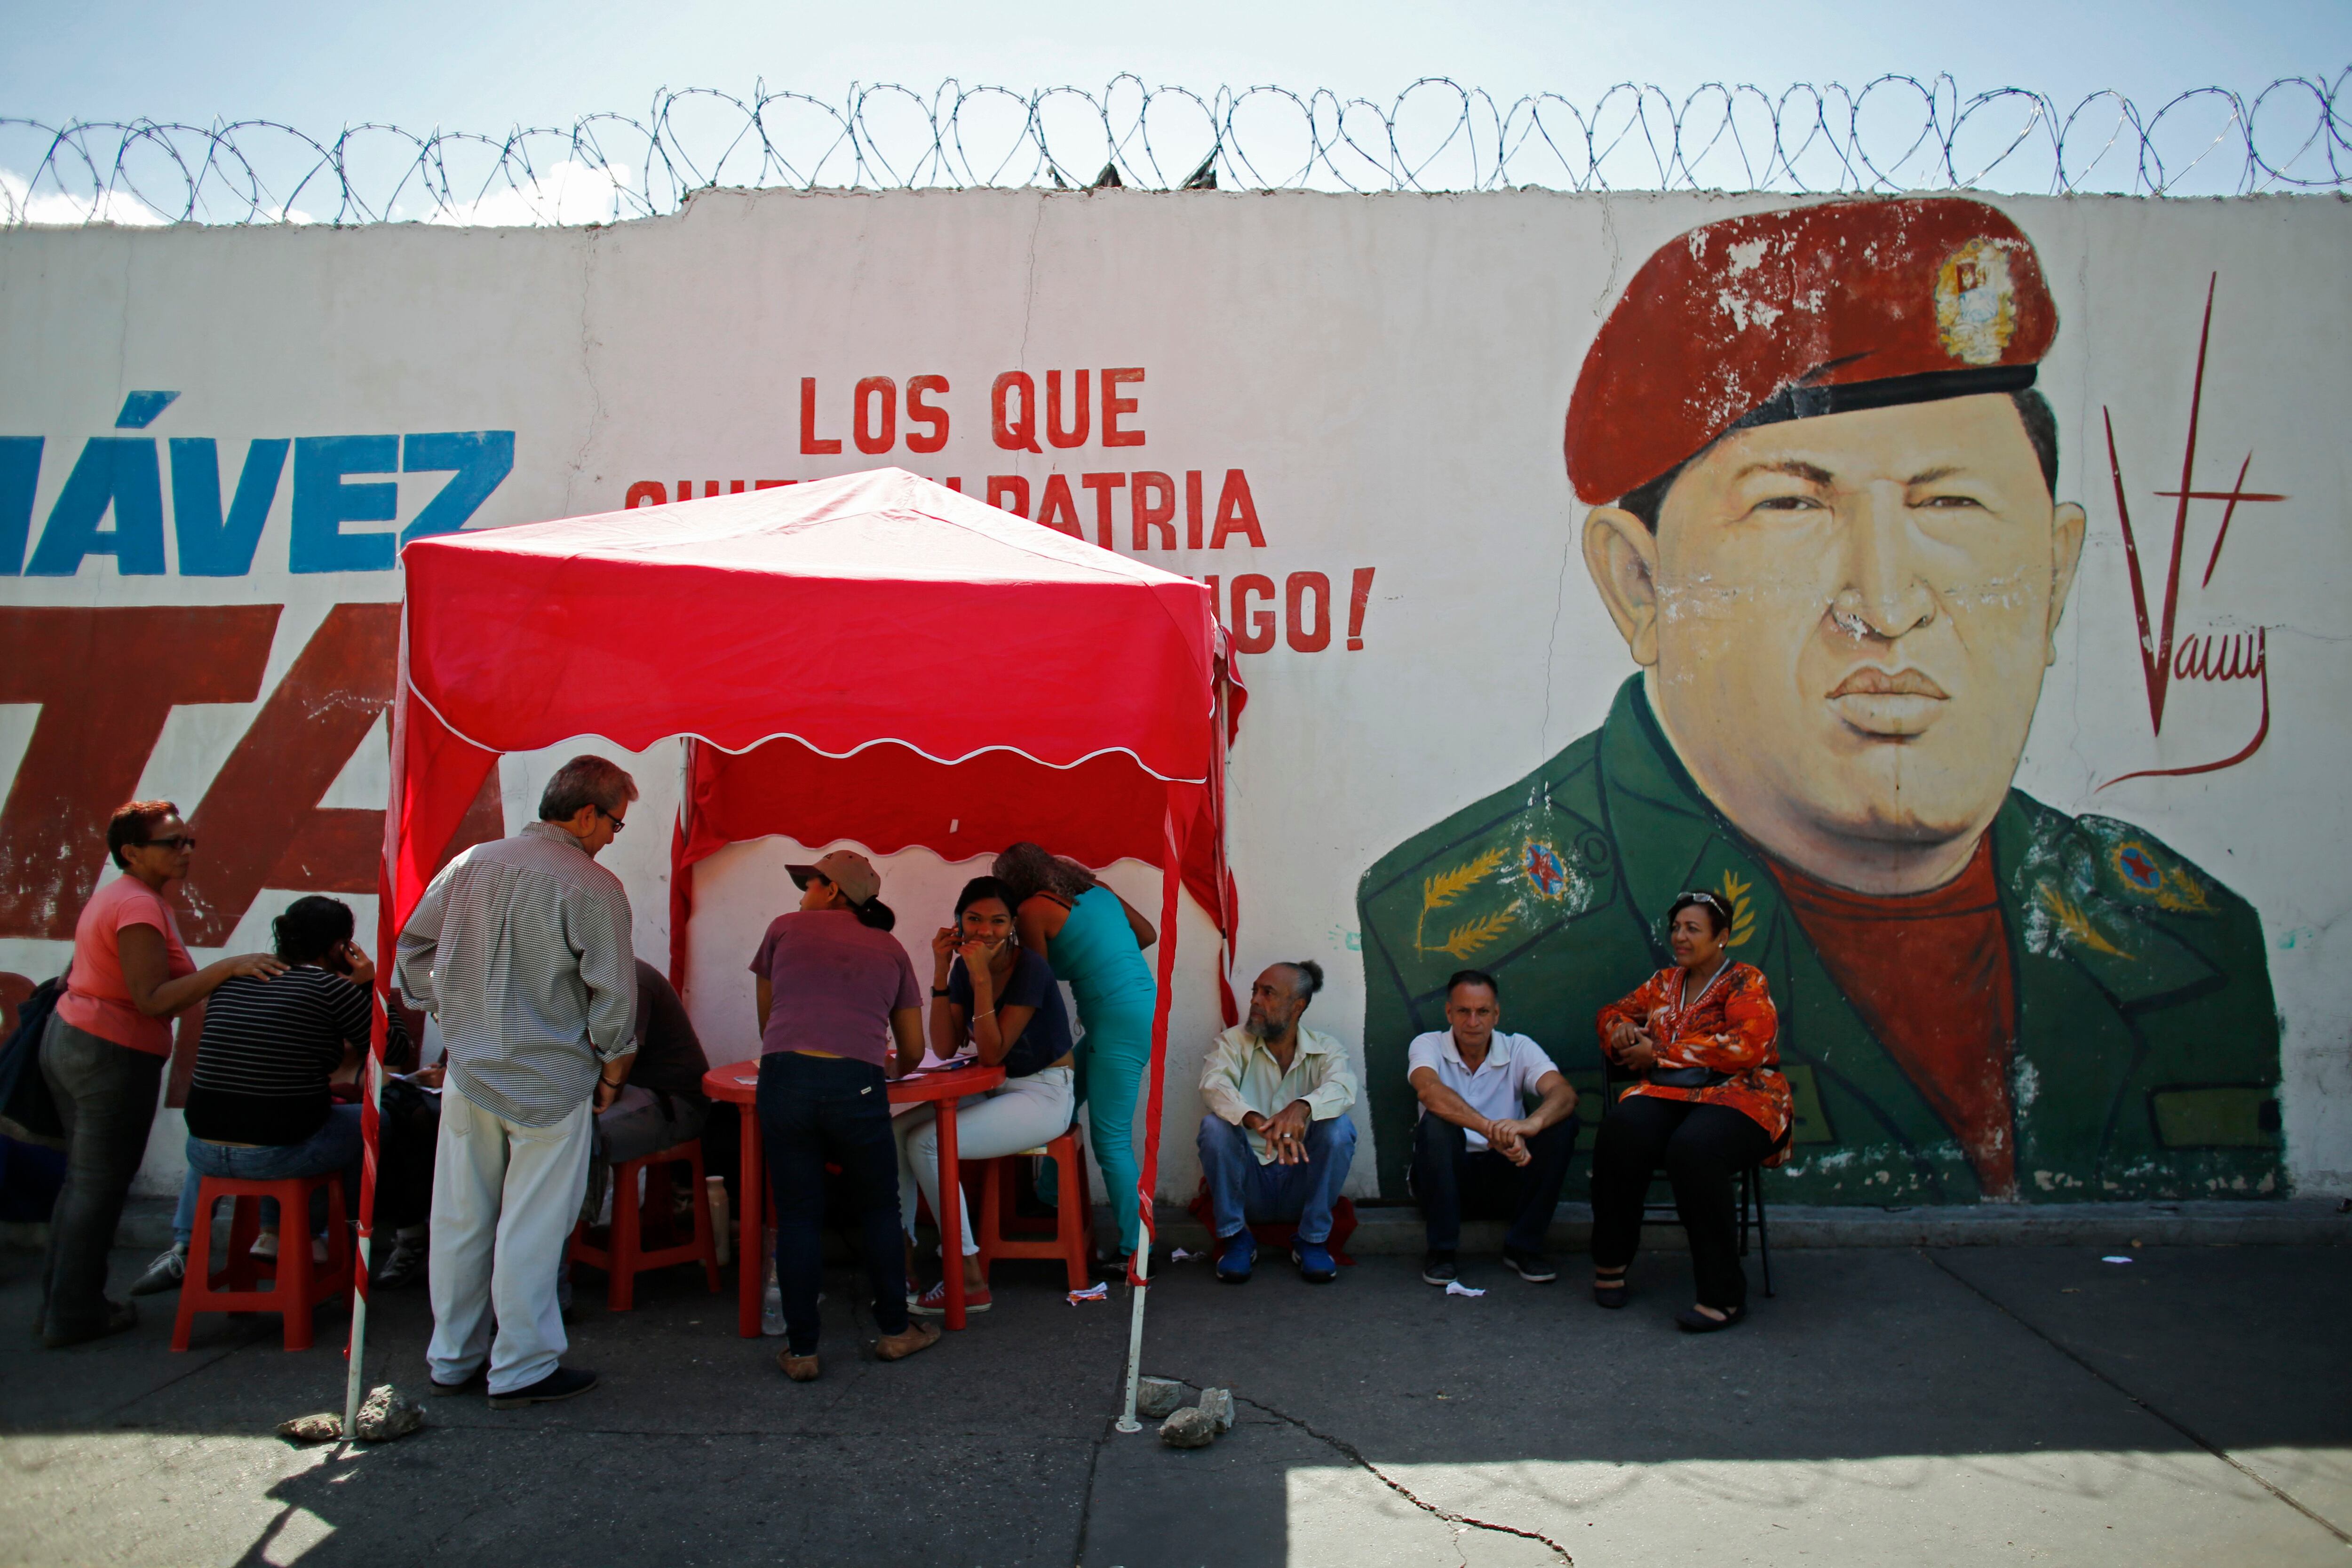 En las primarias opositoras de 2012, donde se eligió un candidato para enfrentar al fallecido Hugo Chávez y participaron más de 3 millones de votantes (16,7% del padrón electoral en aquel entonces), se habilitaron 3.707 centros.